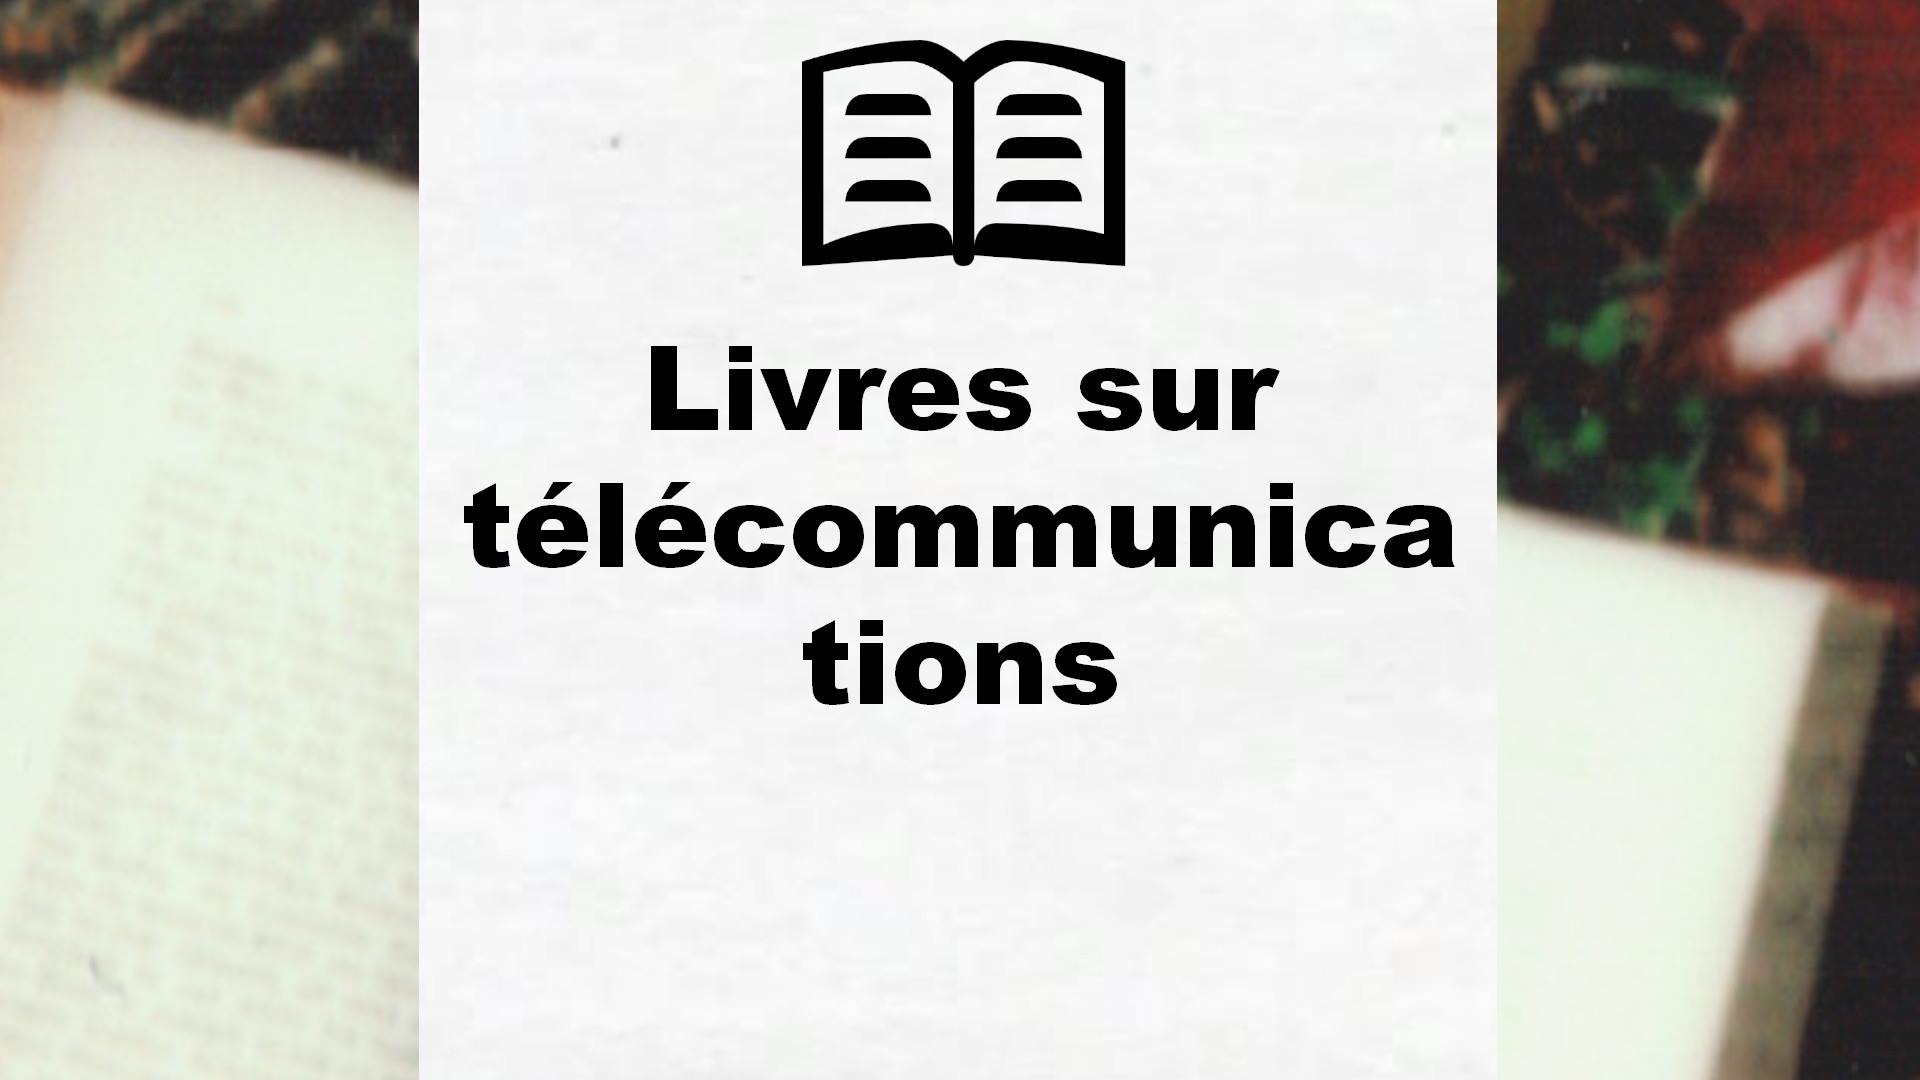 Livres sur télécommunications